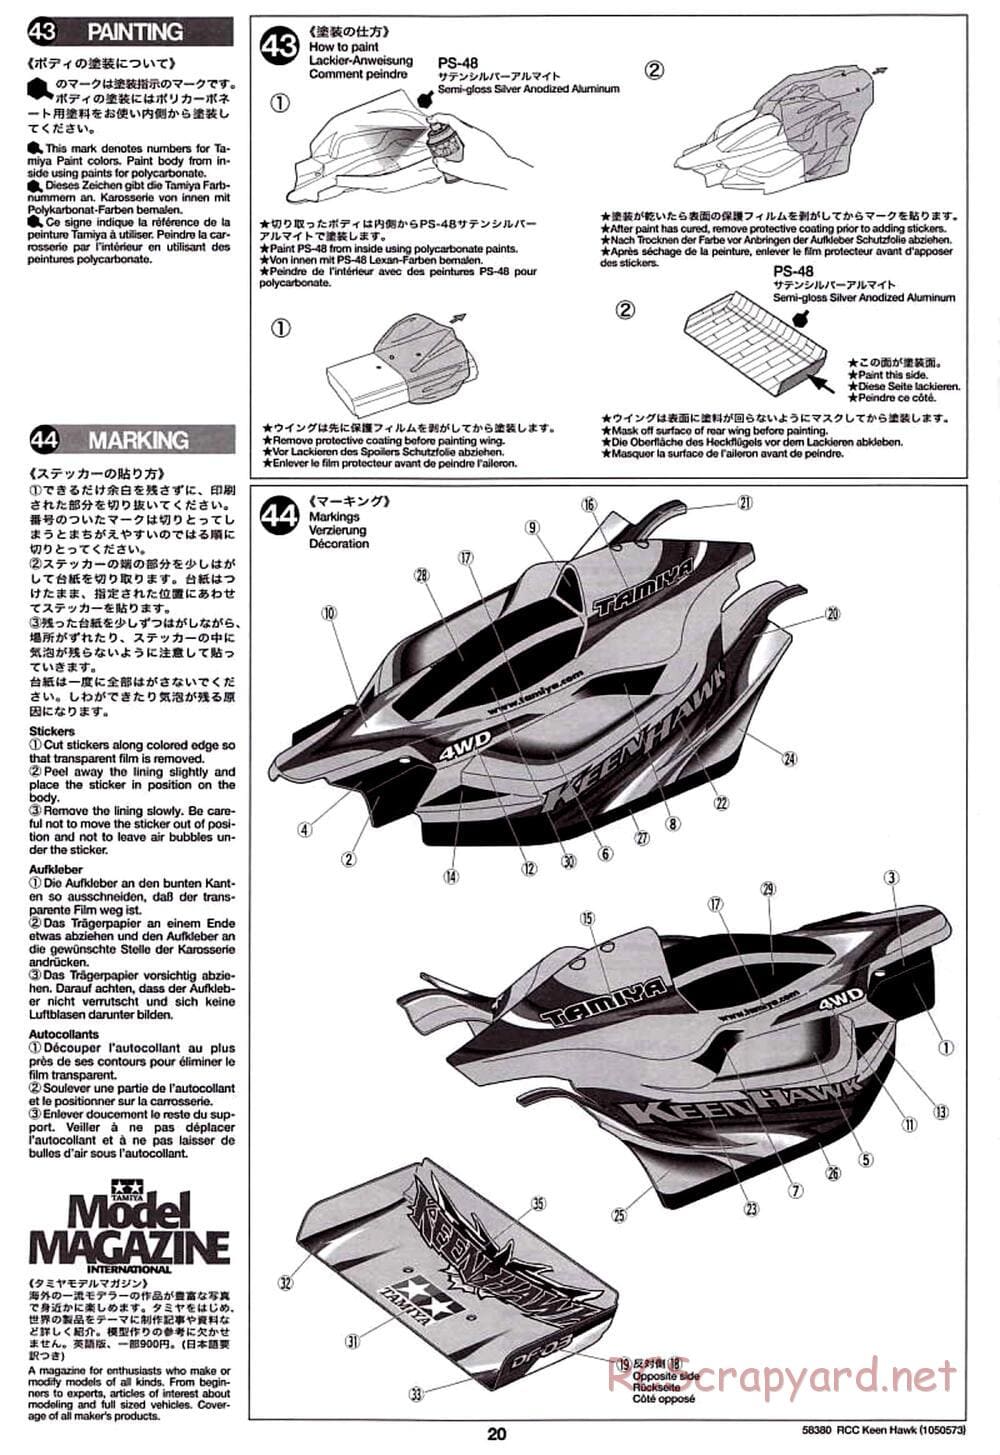 Tamiya - Keen Hawk Chassis - Manual - Page 20